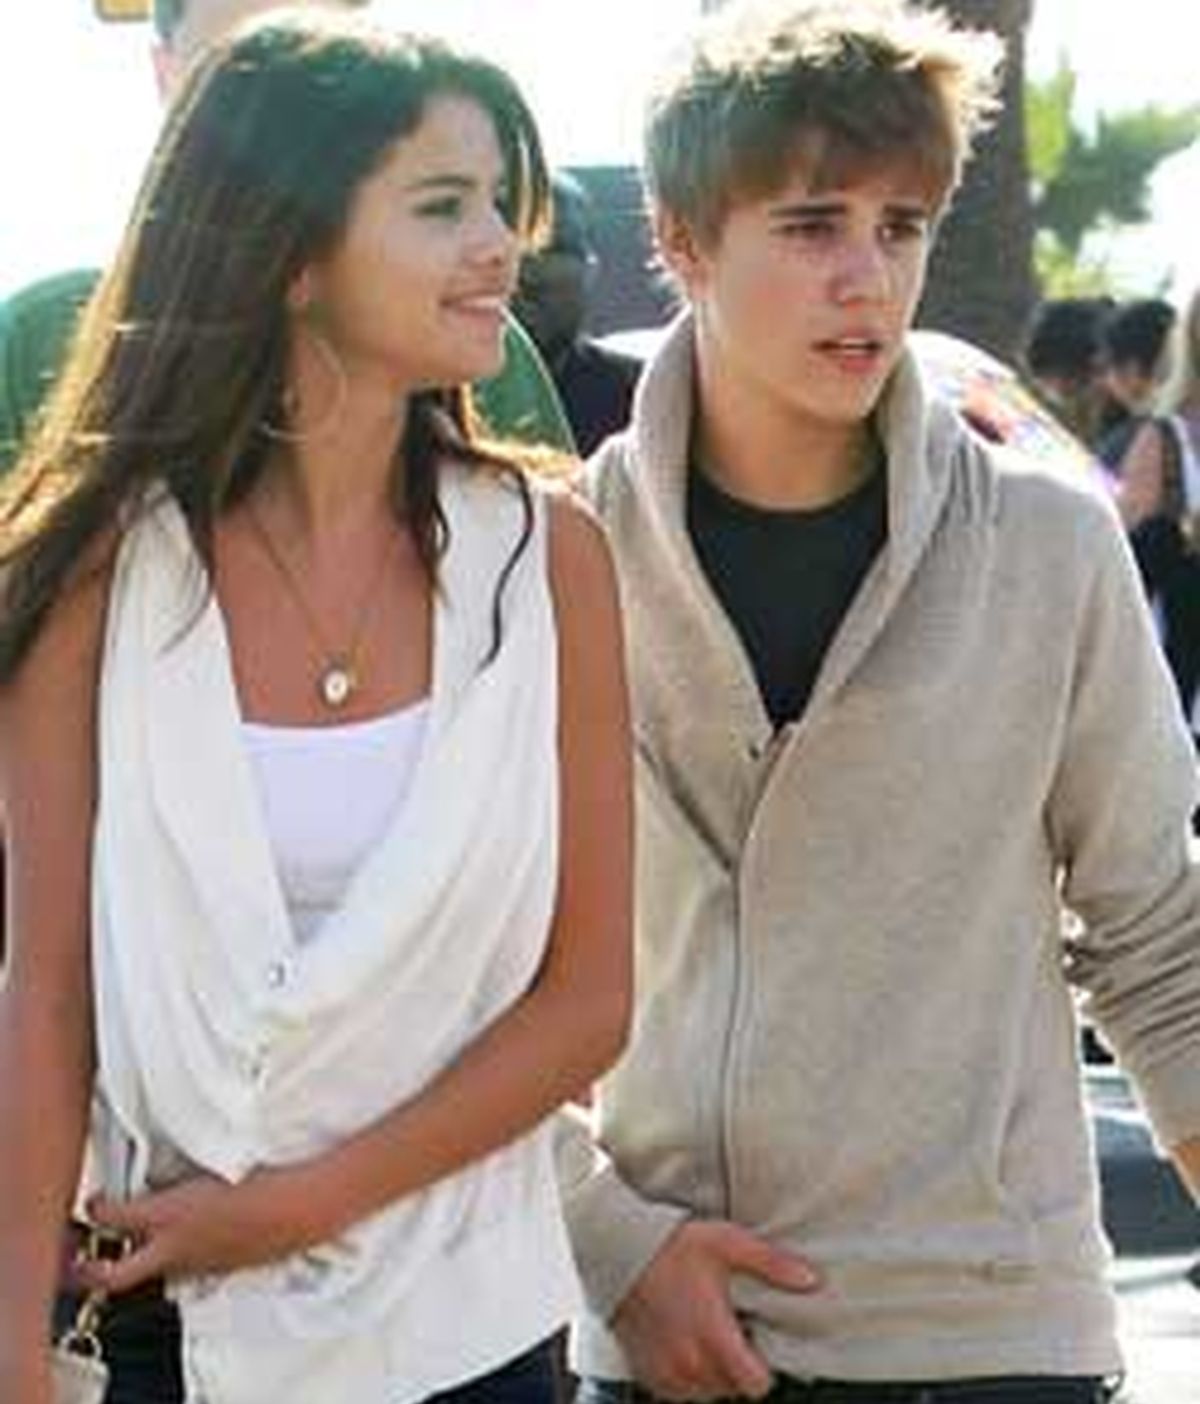 Ahora entendemos porqué Selena Gomez confesó hace unos días que no le gustaban las amistades de su novio. FOTO: Gtres